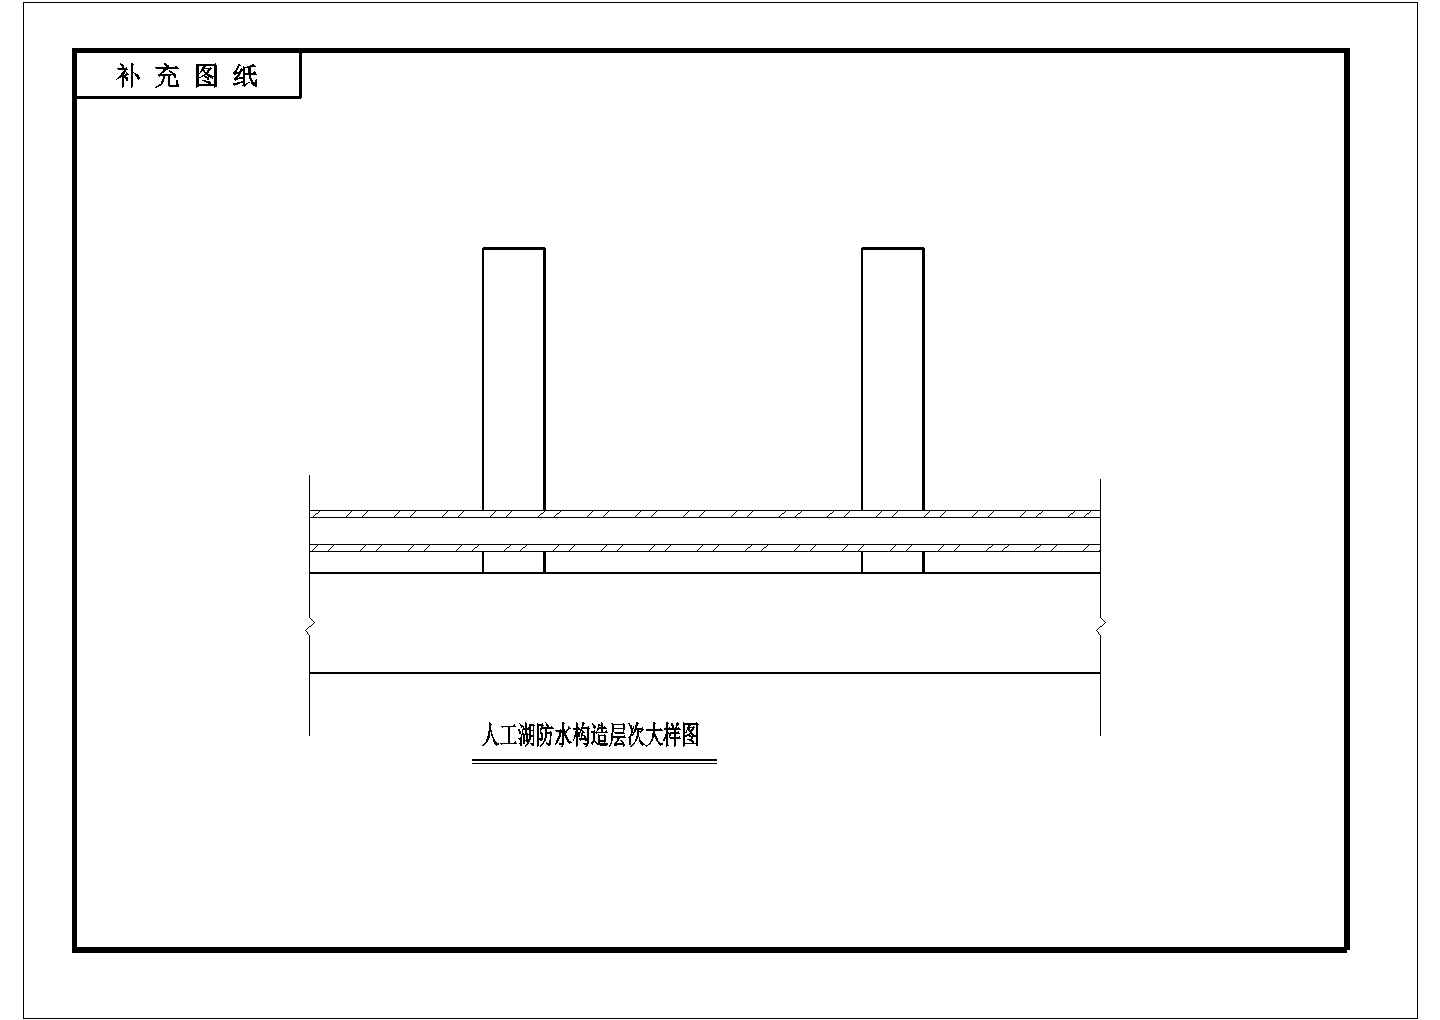 南京汤山某会所温泉防水全套施工设计cad图(含图纸目录)